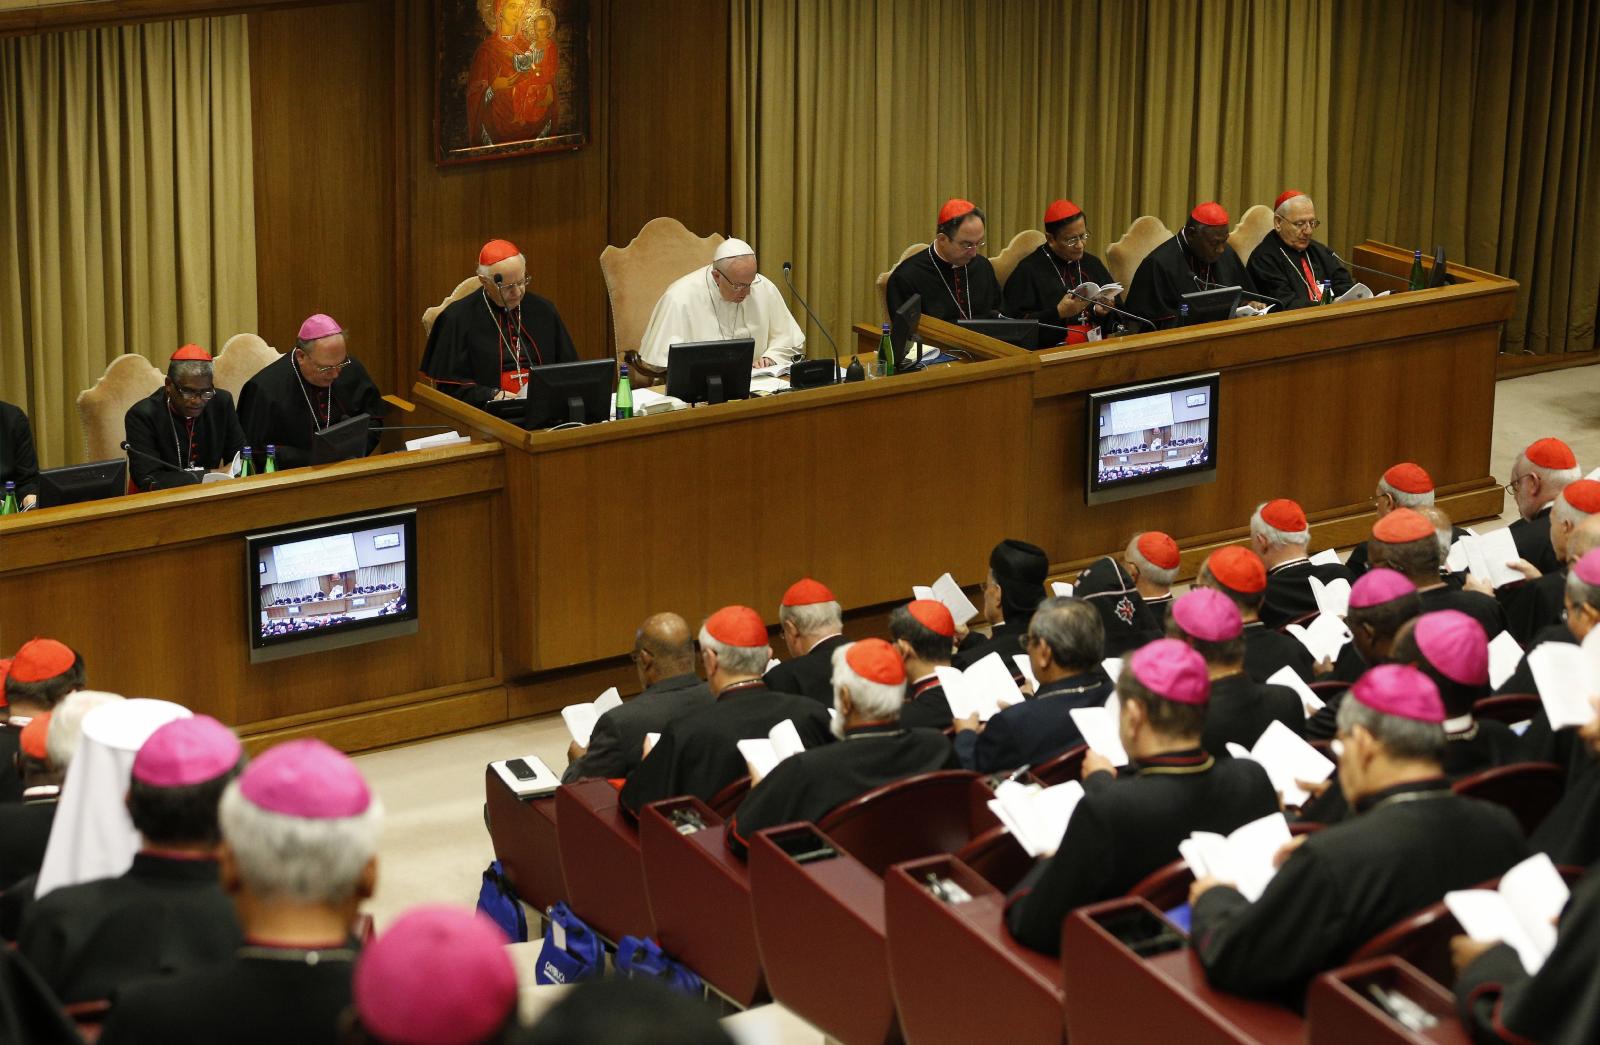 2018 synod assembly